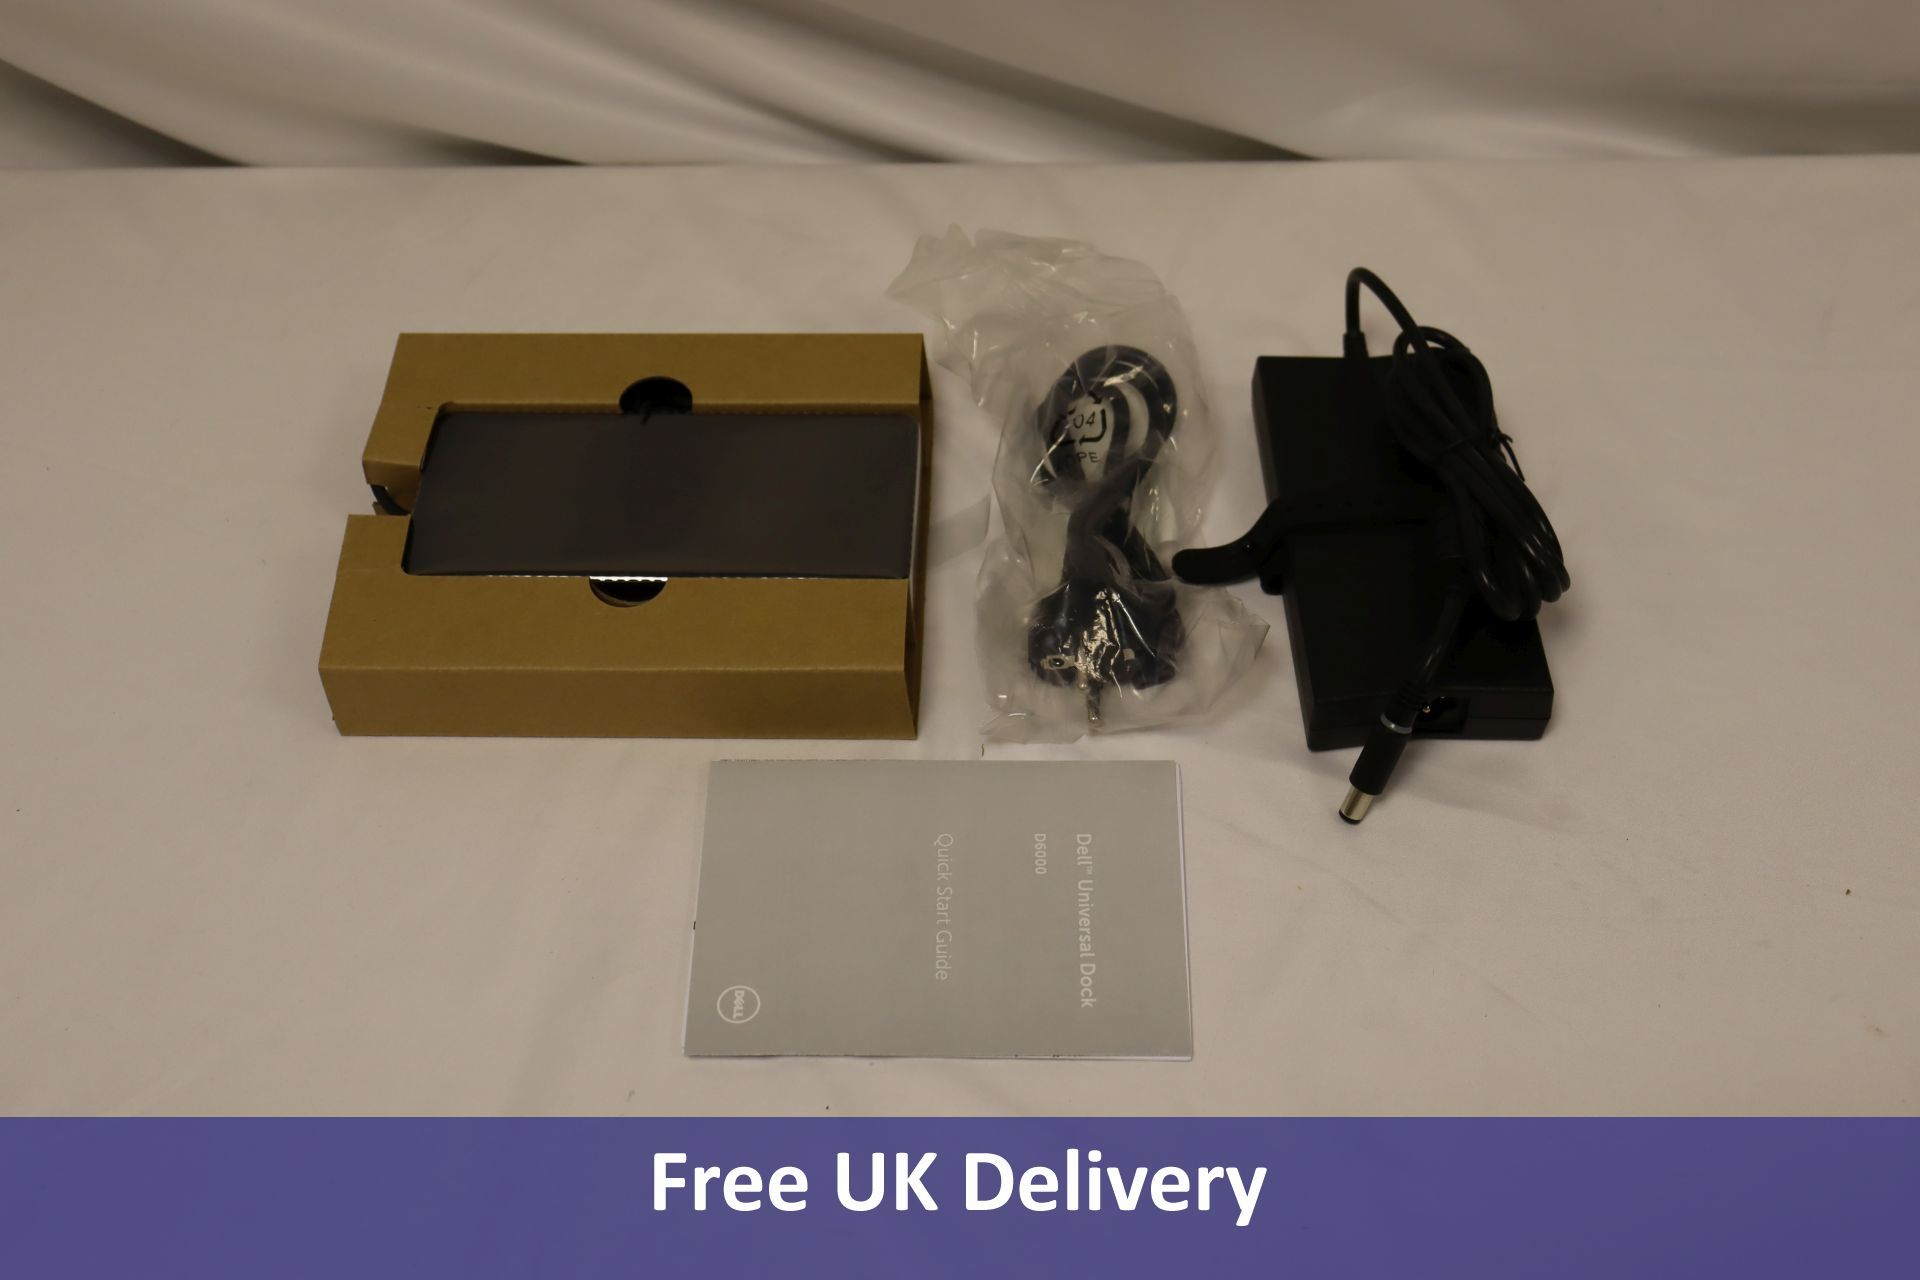 Dell Universal Dock, D6000, Requires UK Adaptor